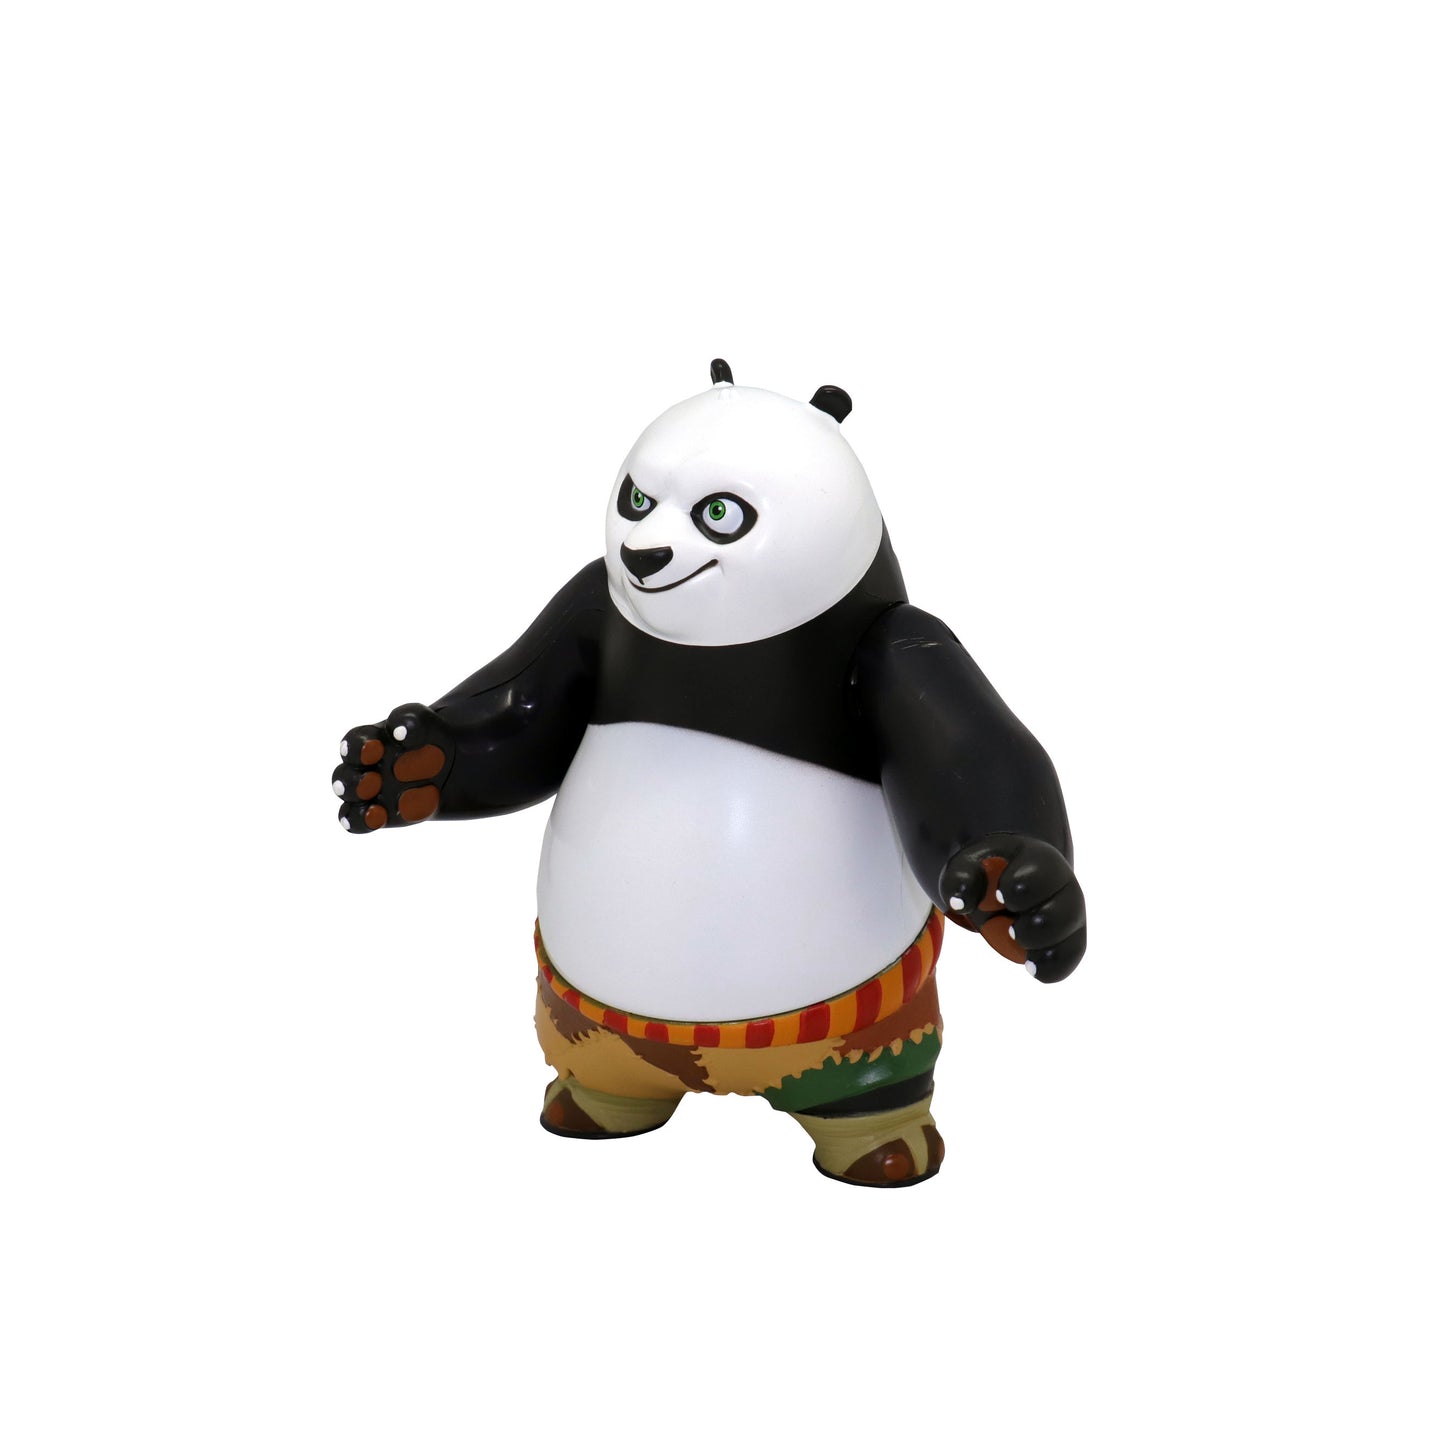 Kung Fu panda plush Karate Chopping